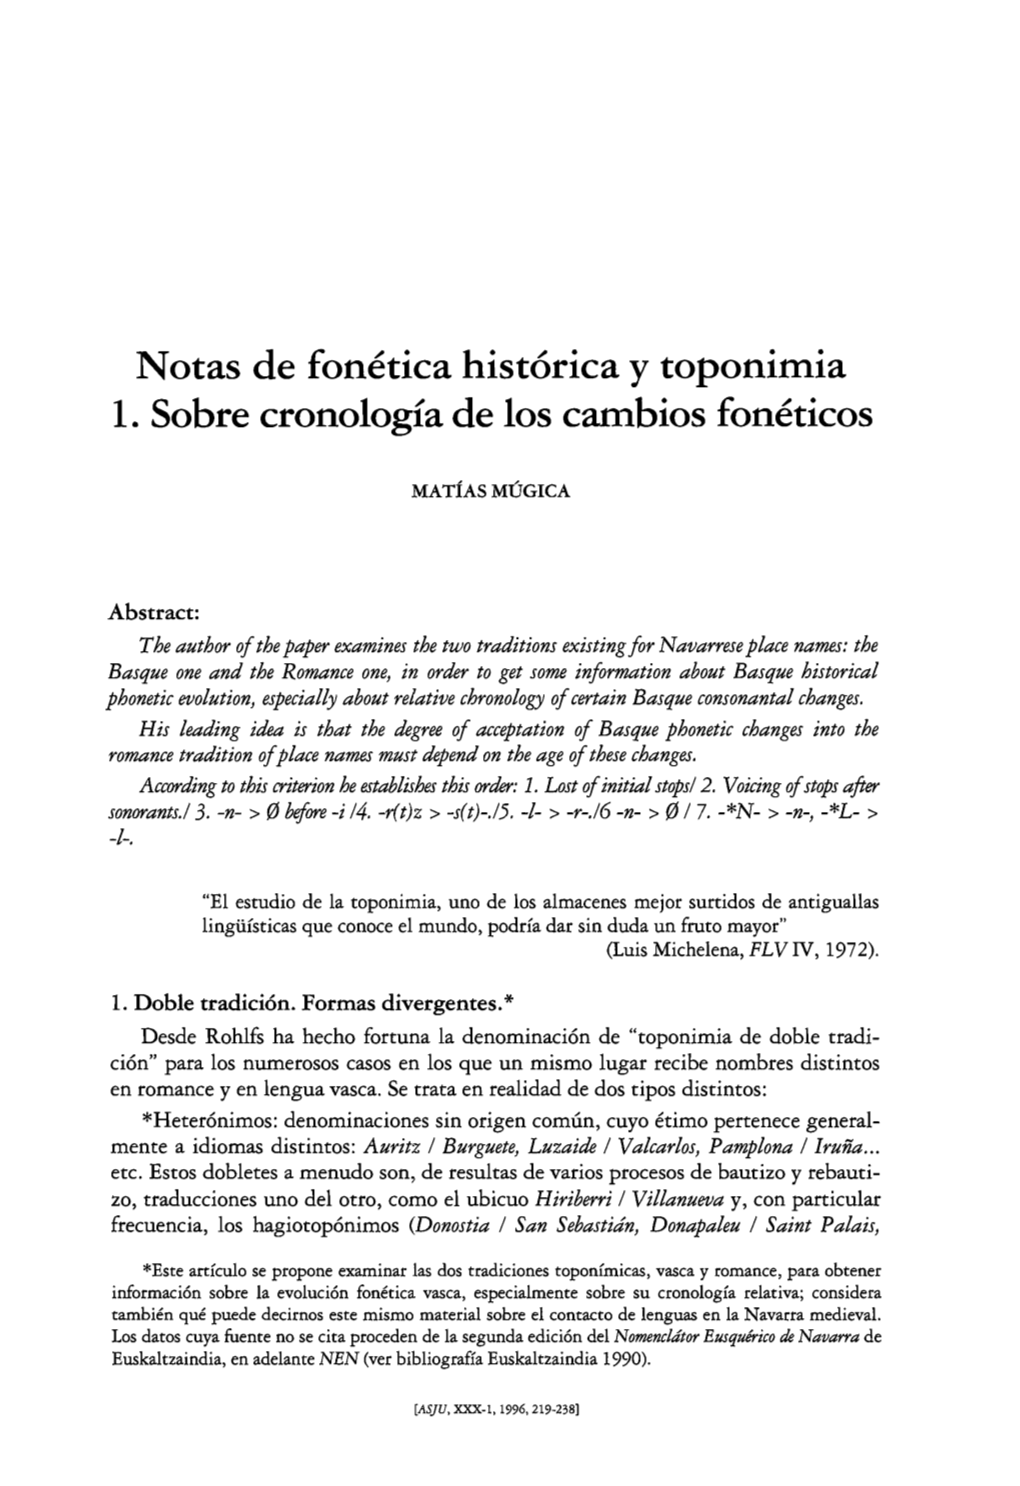 Notas De Fonetica Historica Y Toponimia 1. Sobre Cronologia De 10S Cambios Foneticos